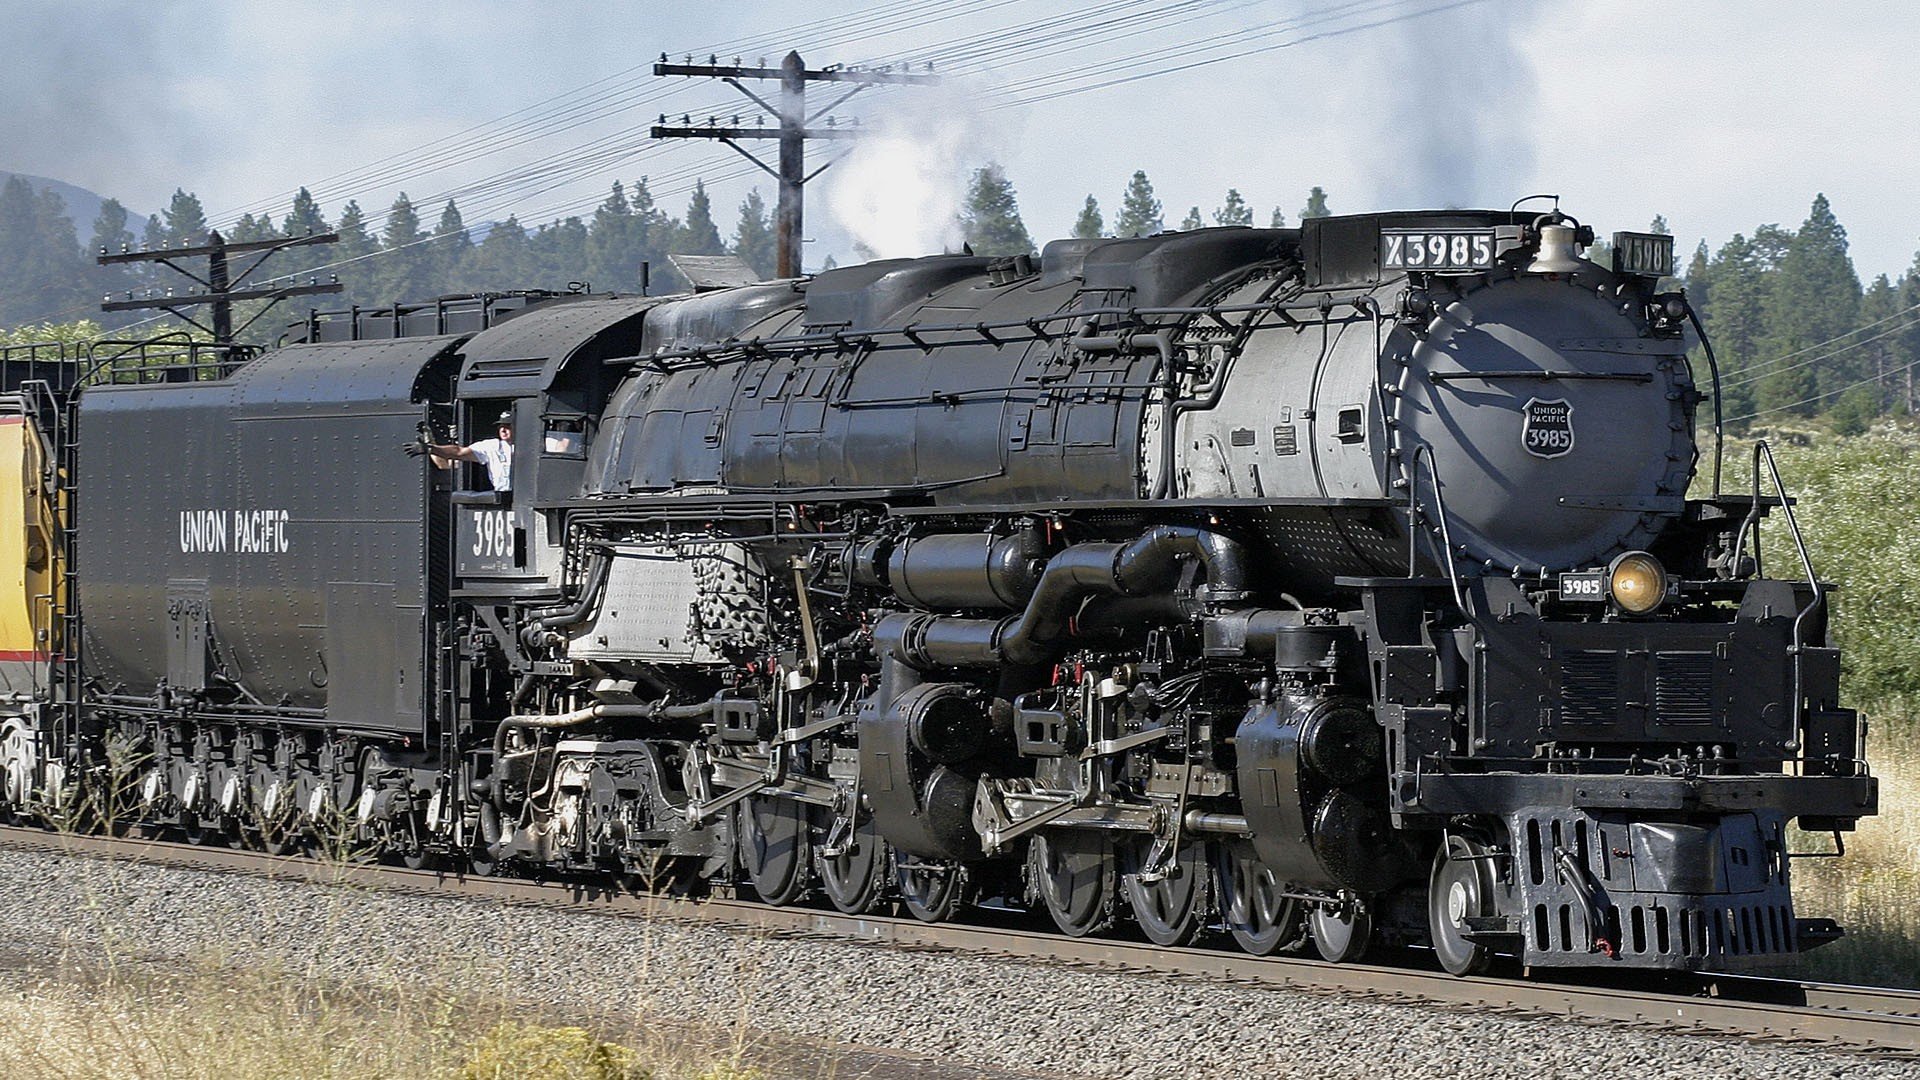 Union Pacific Steam Train